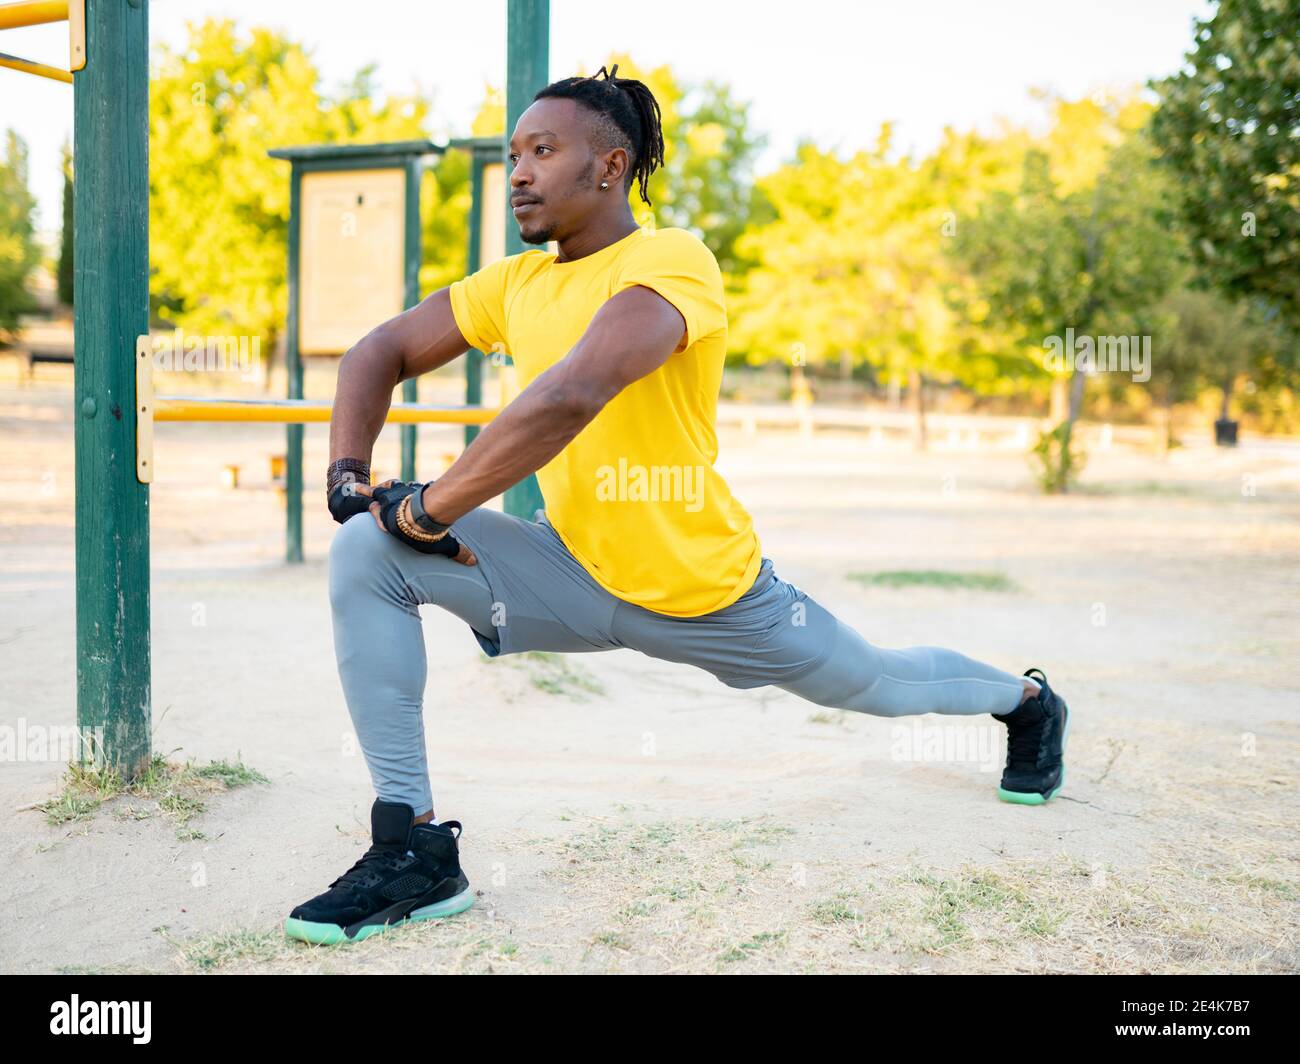 Sportler, der sich beim Training im Park Bein streckt Stockfoto